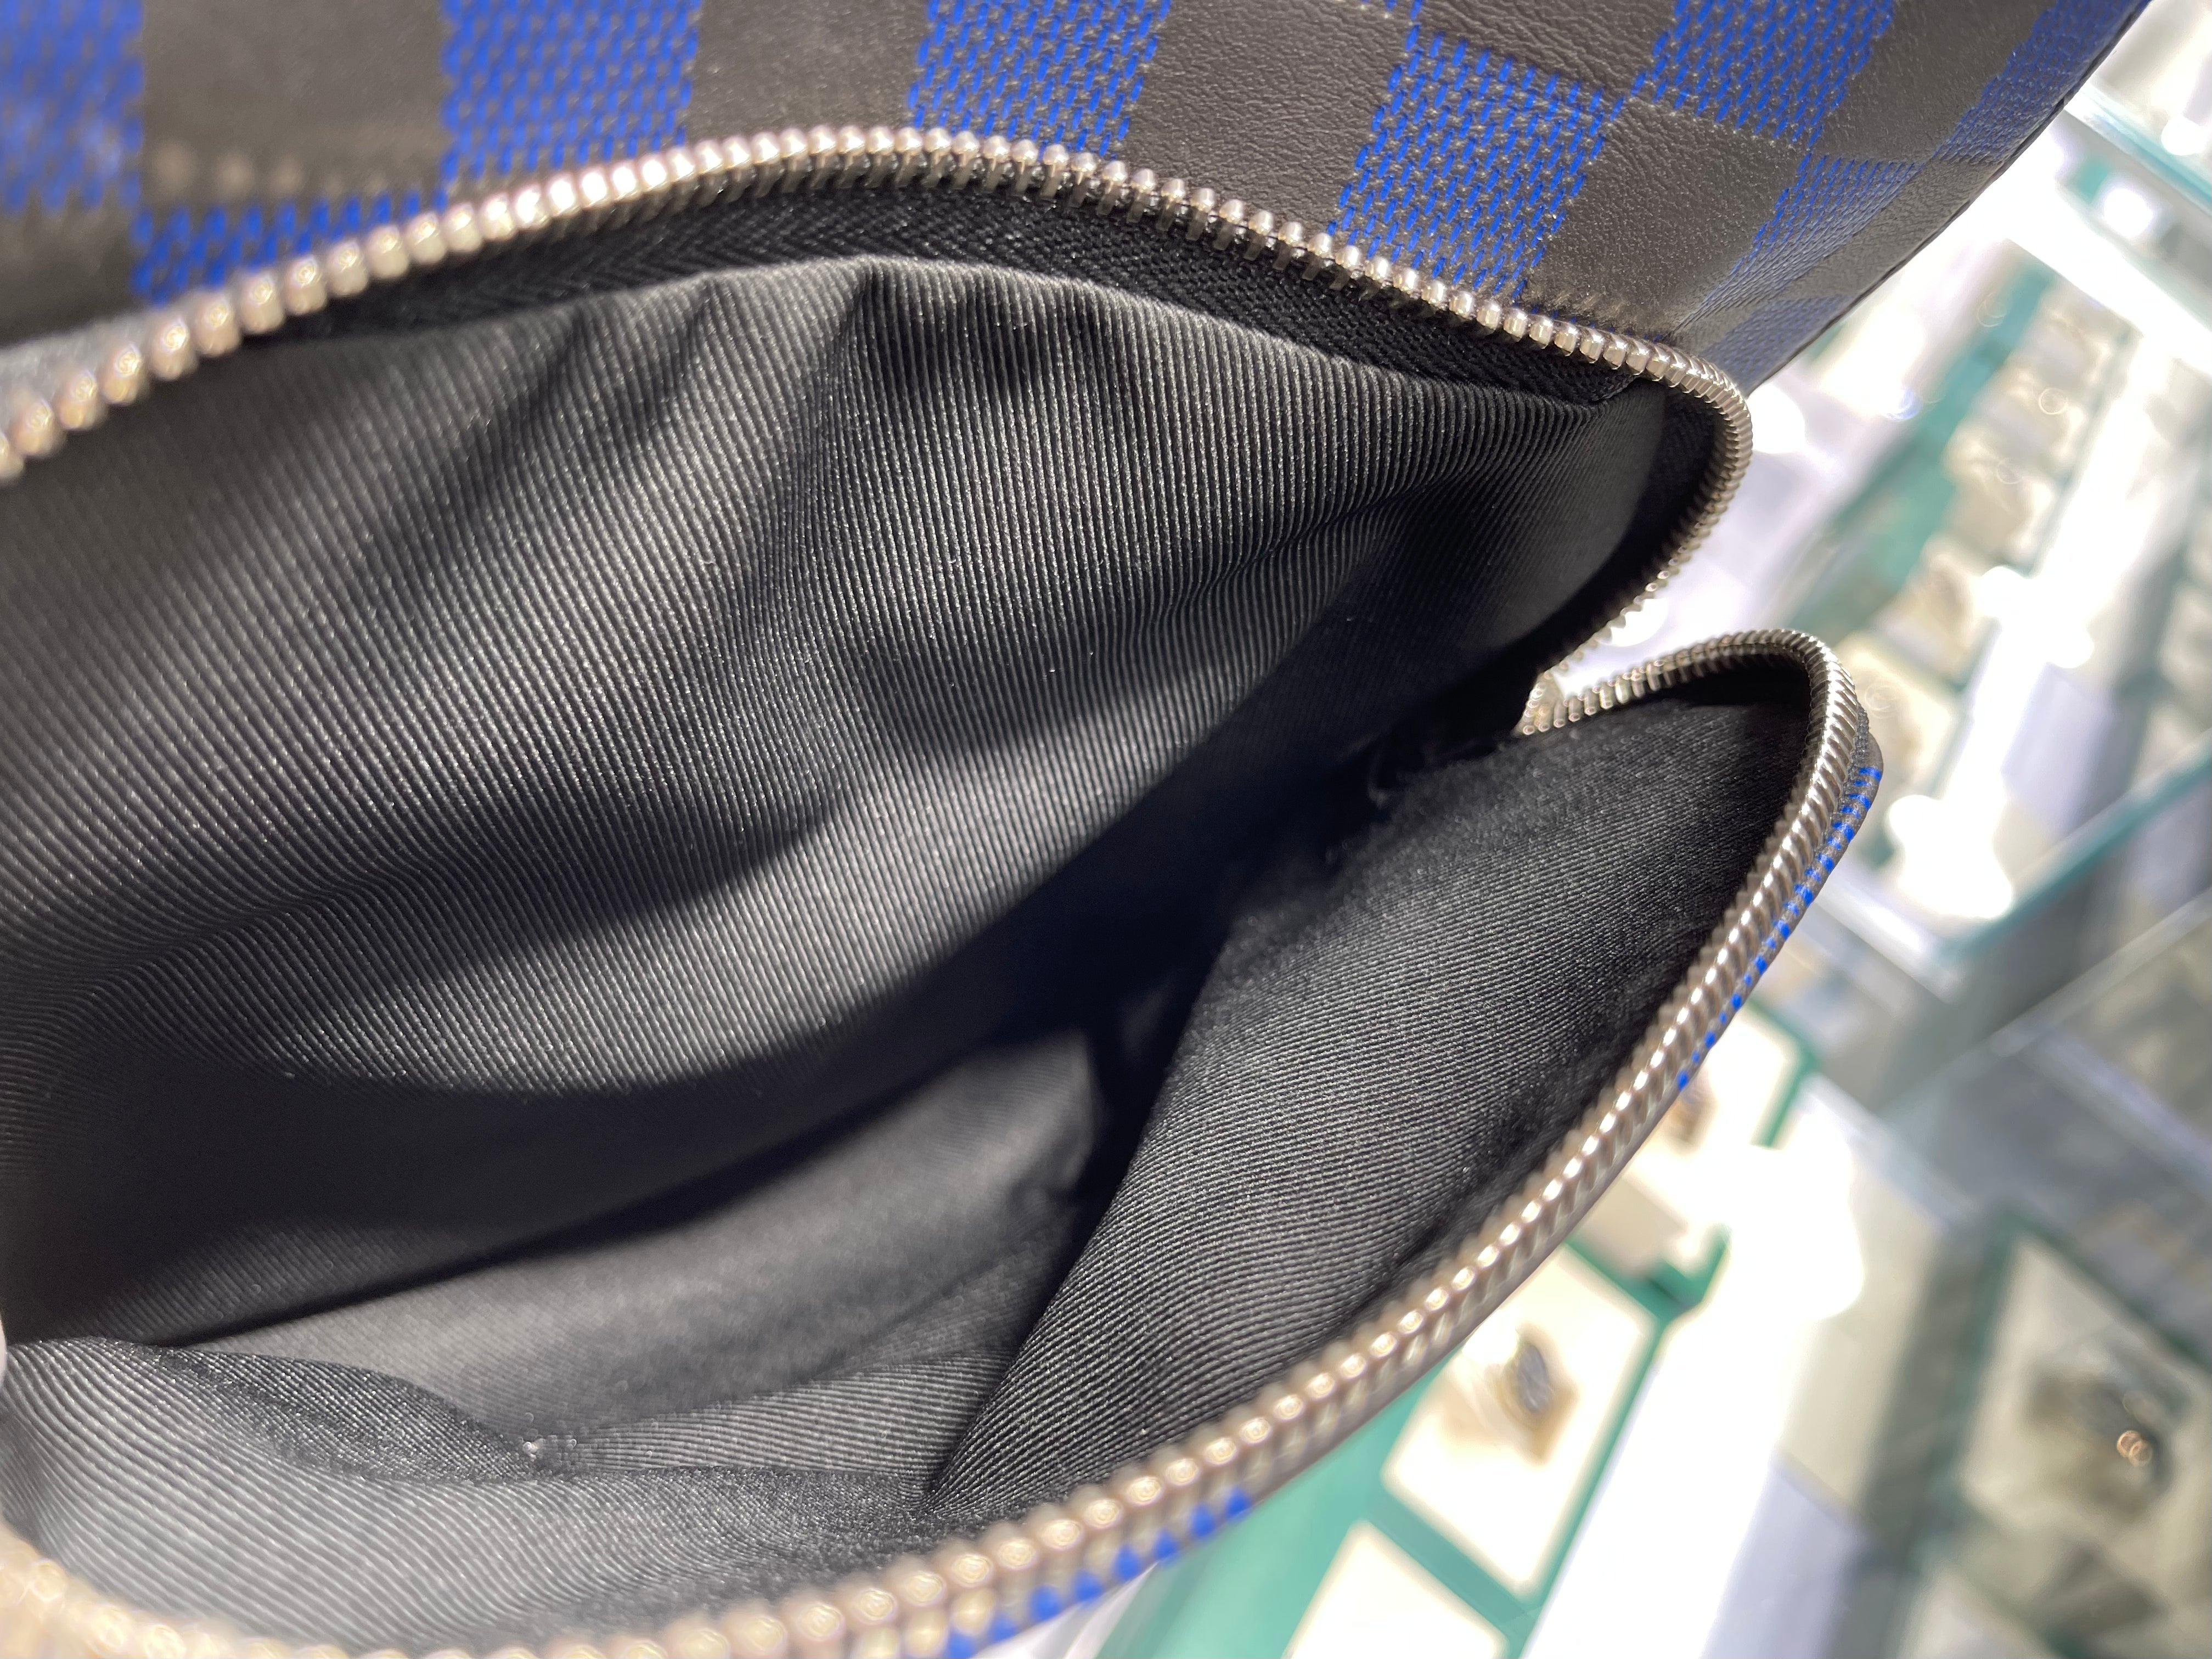 Louis Vuitton Avenue Sling Bag Damier Infini 3D leather –